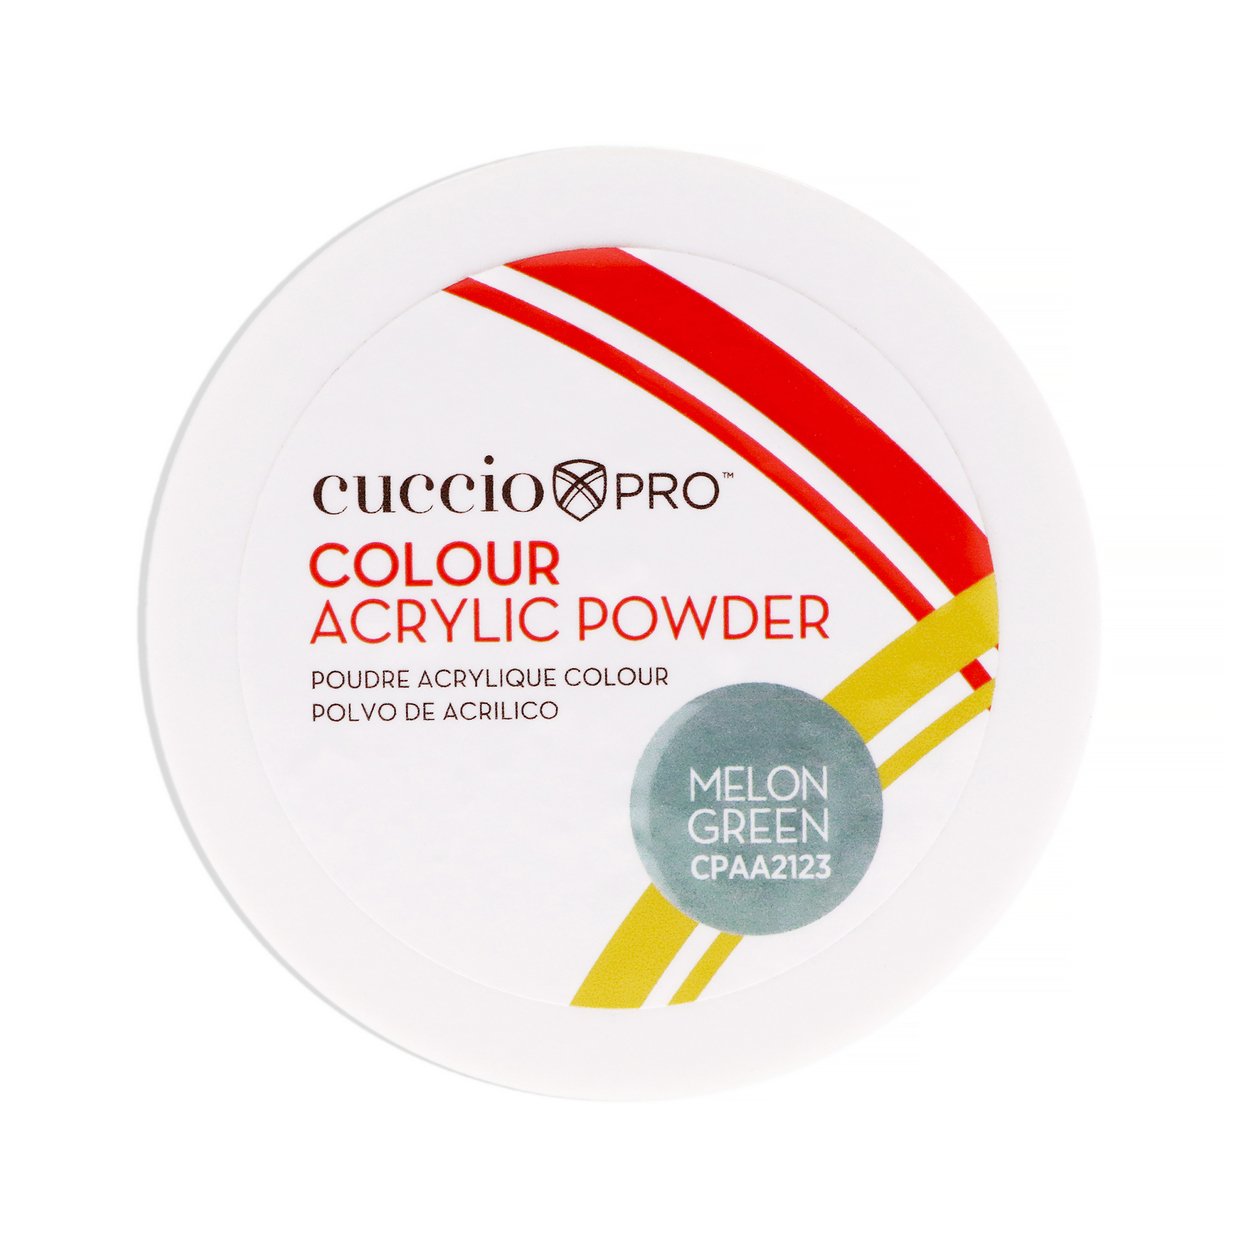 Cuccio PRO Colour Acrylic Powder - Melon Green 1.6 Oz